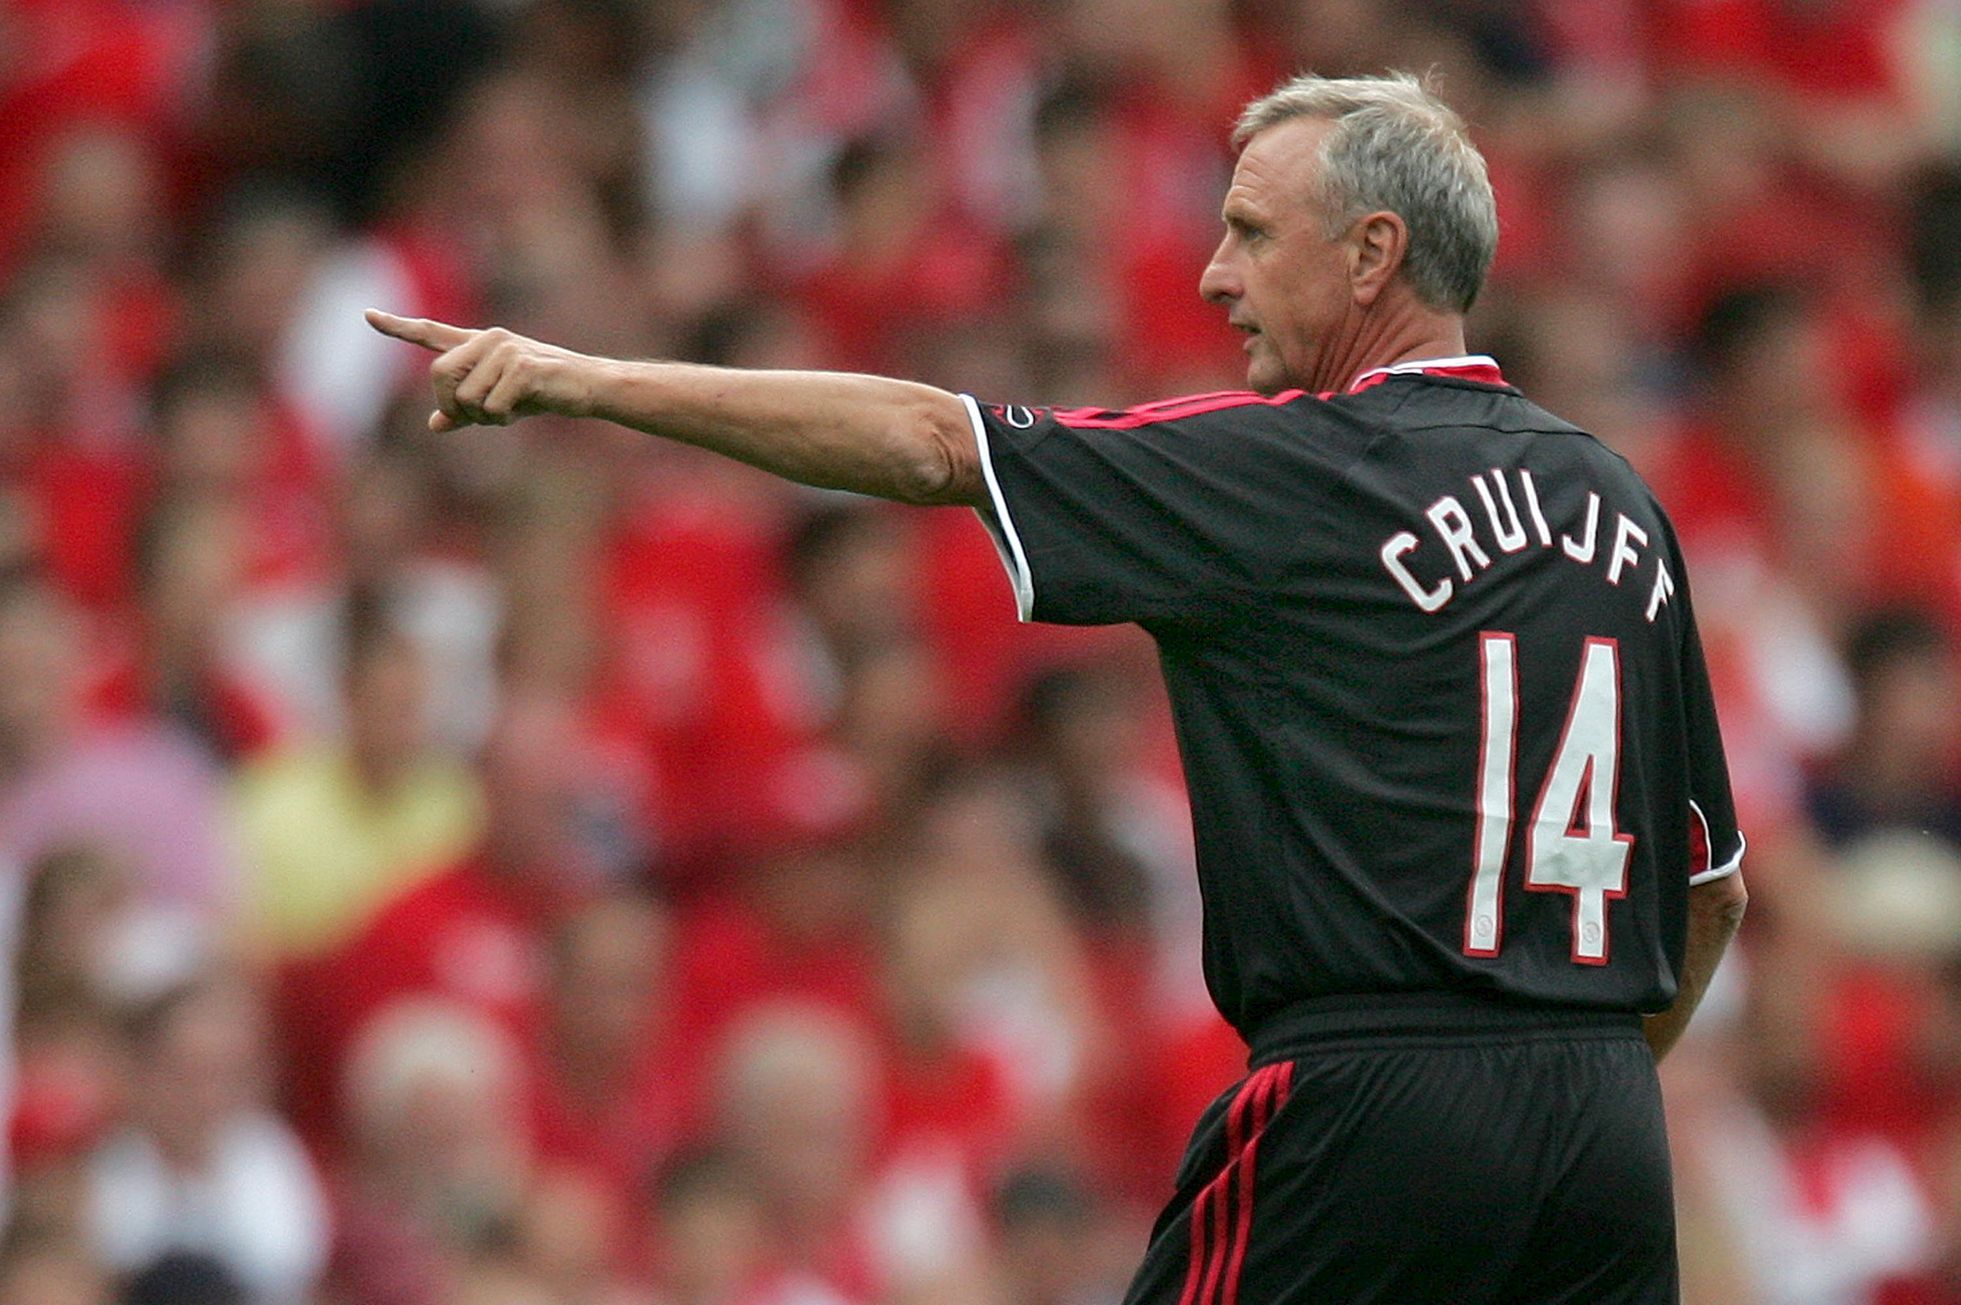 Johan Cruyff (2006)